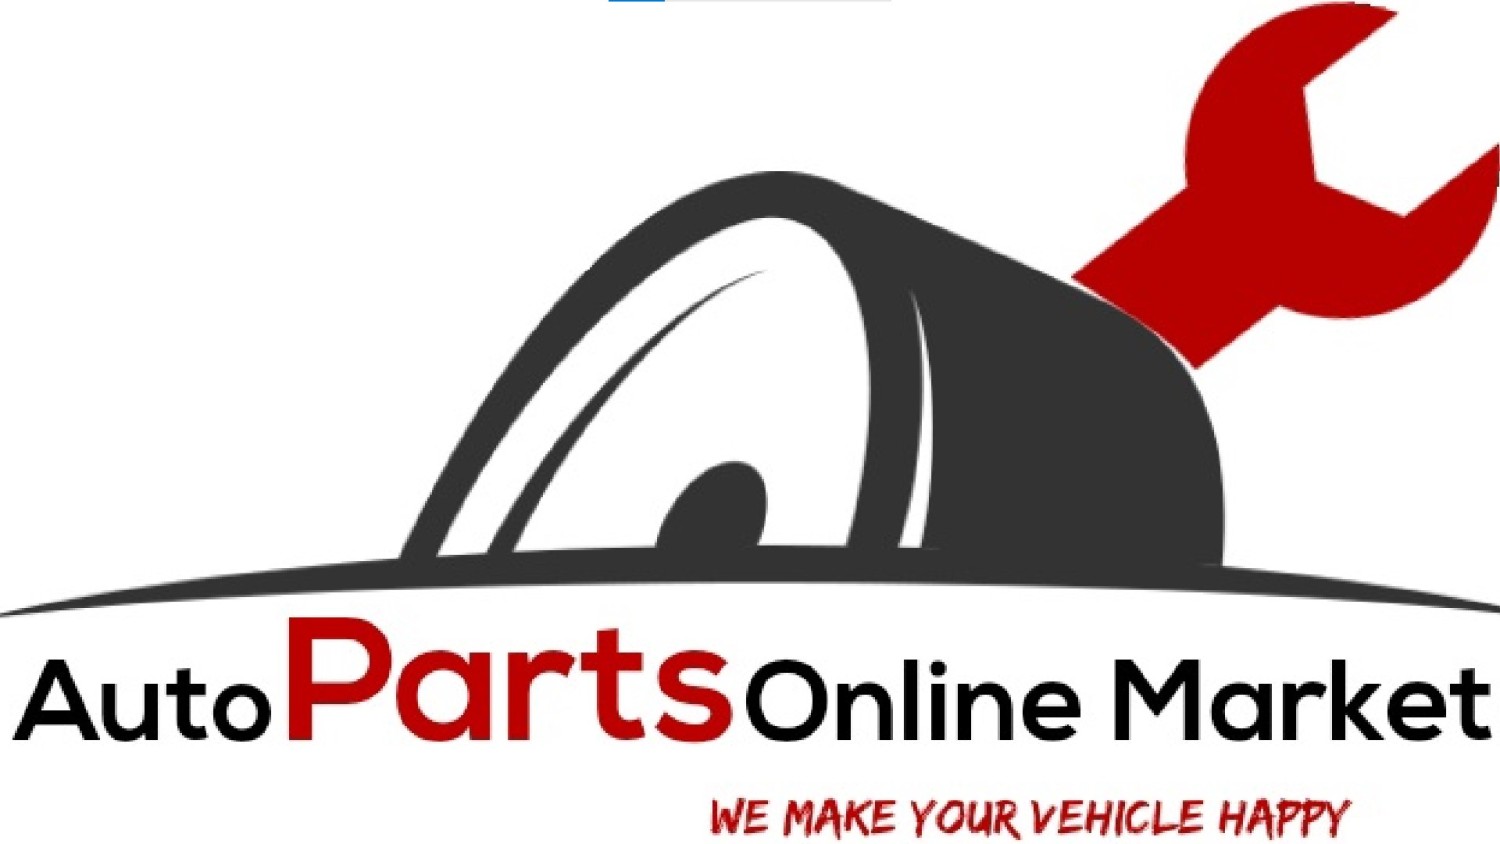 Auto Parts Online Market